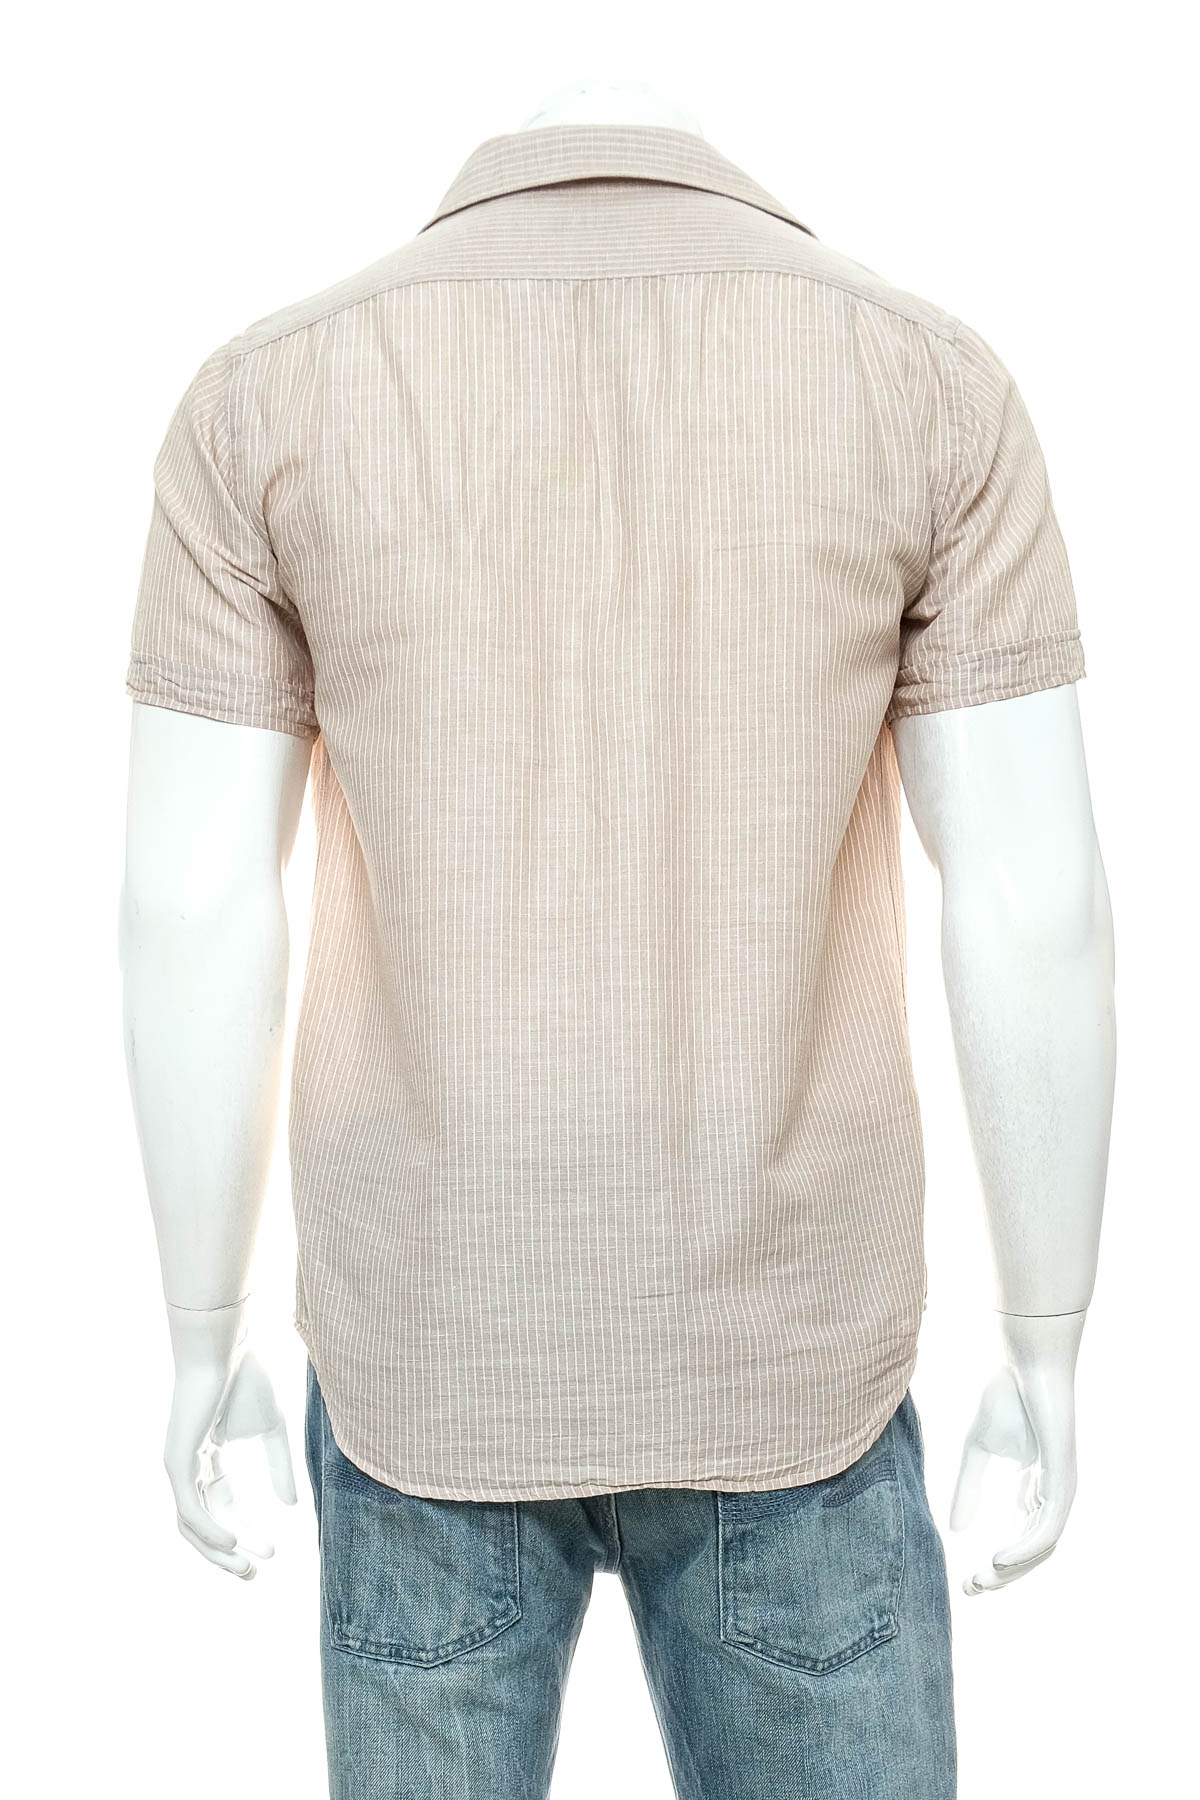 Ανδρικό πουκάμισο - OVS casual - 1